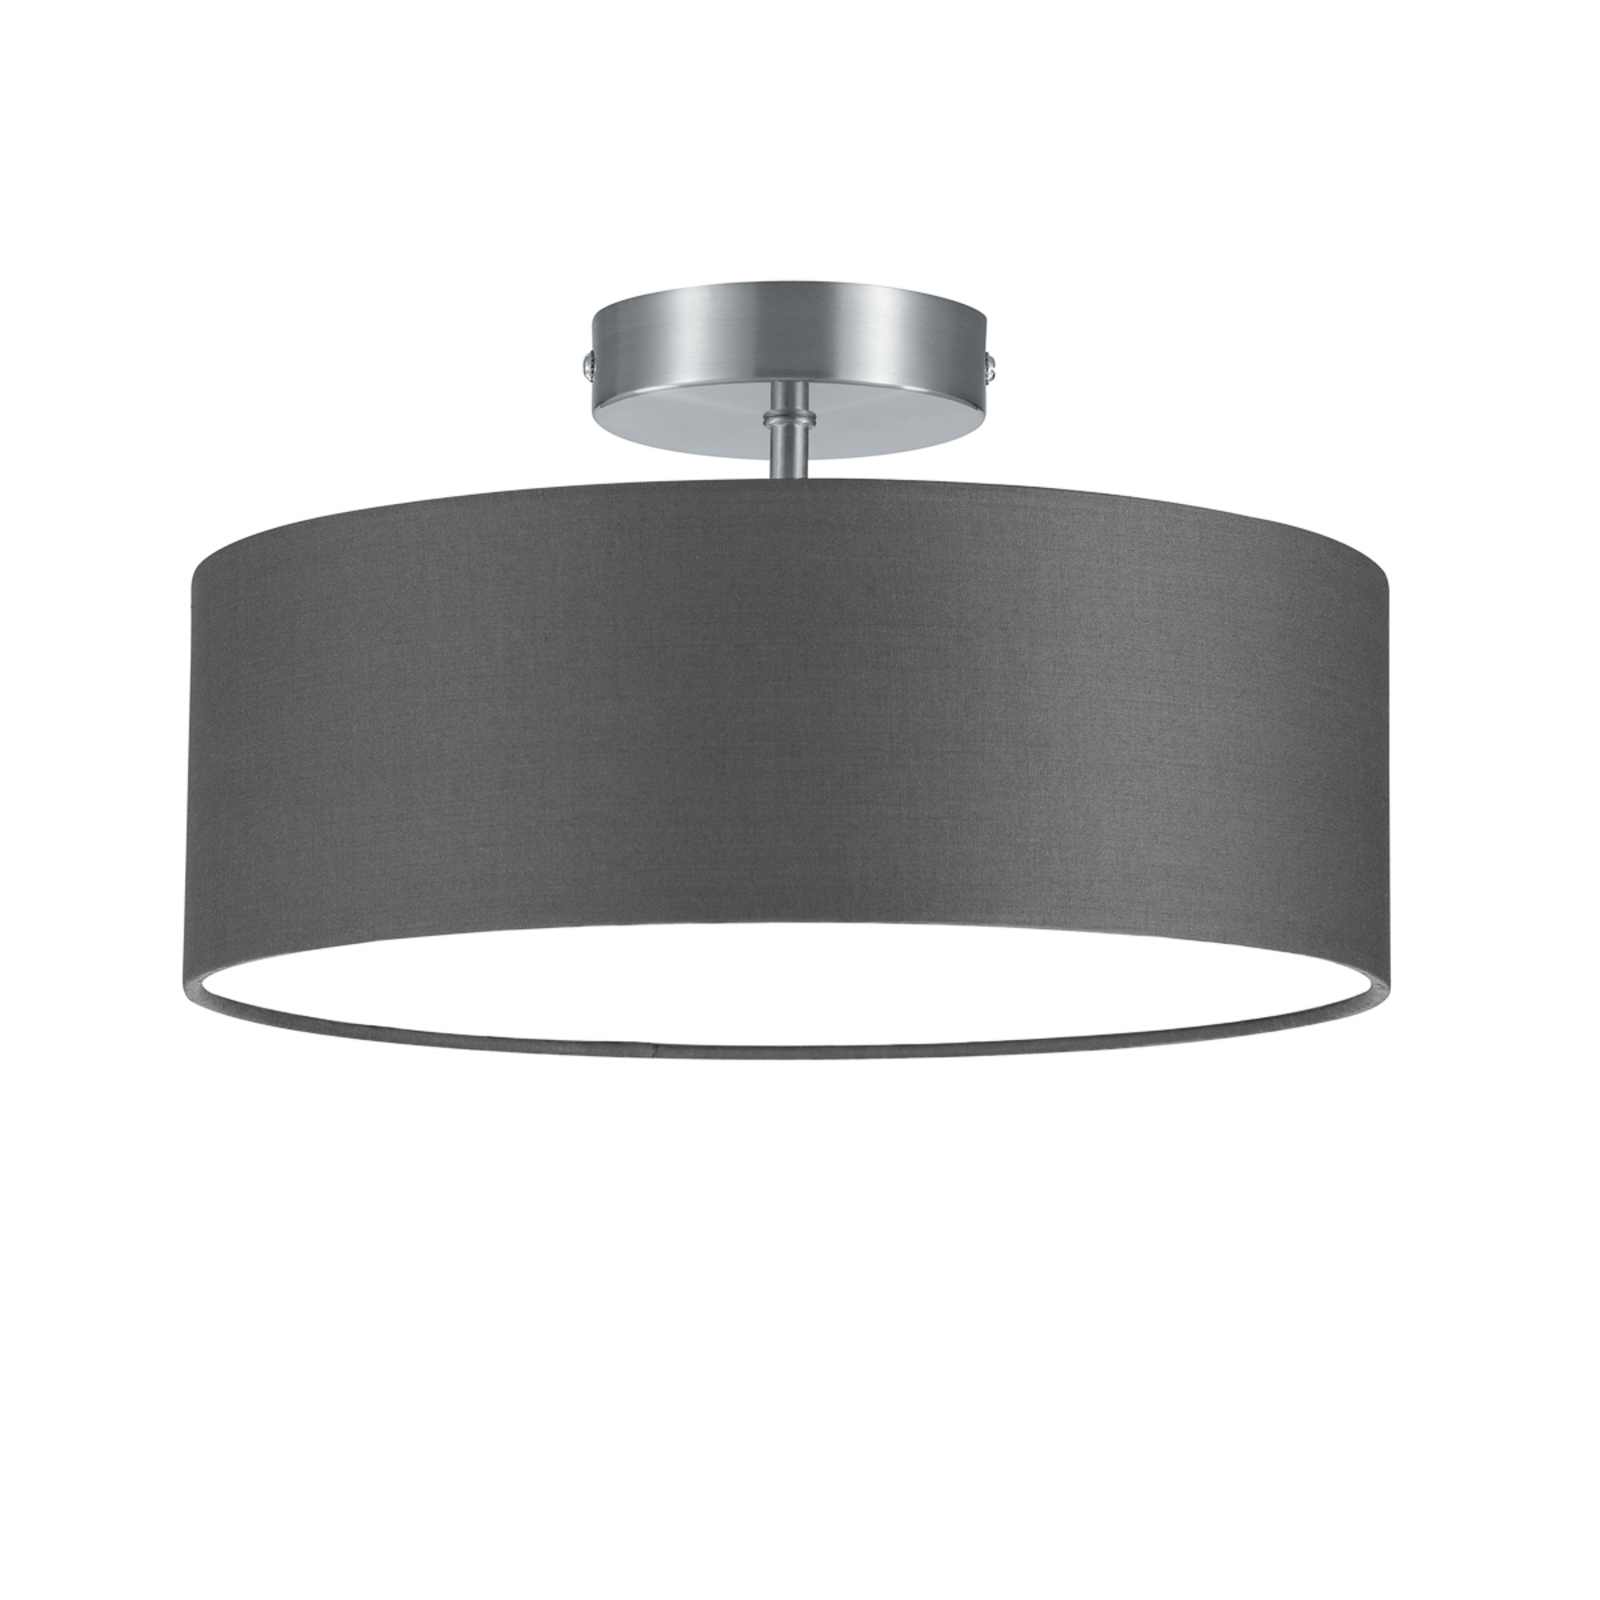 Hotel ceiling light, matt nickel/grey, Ø 30 cm